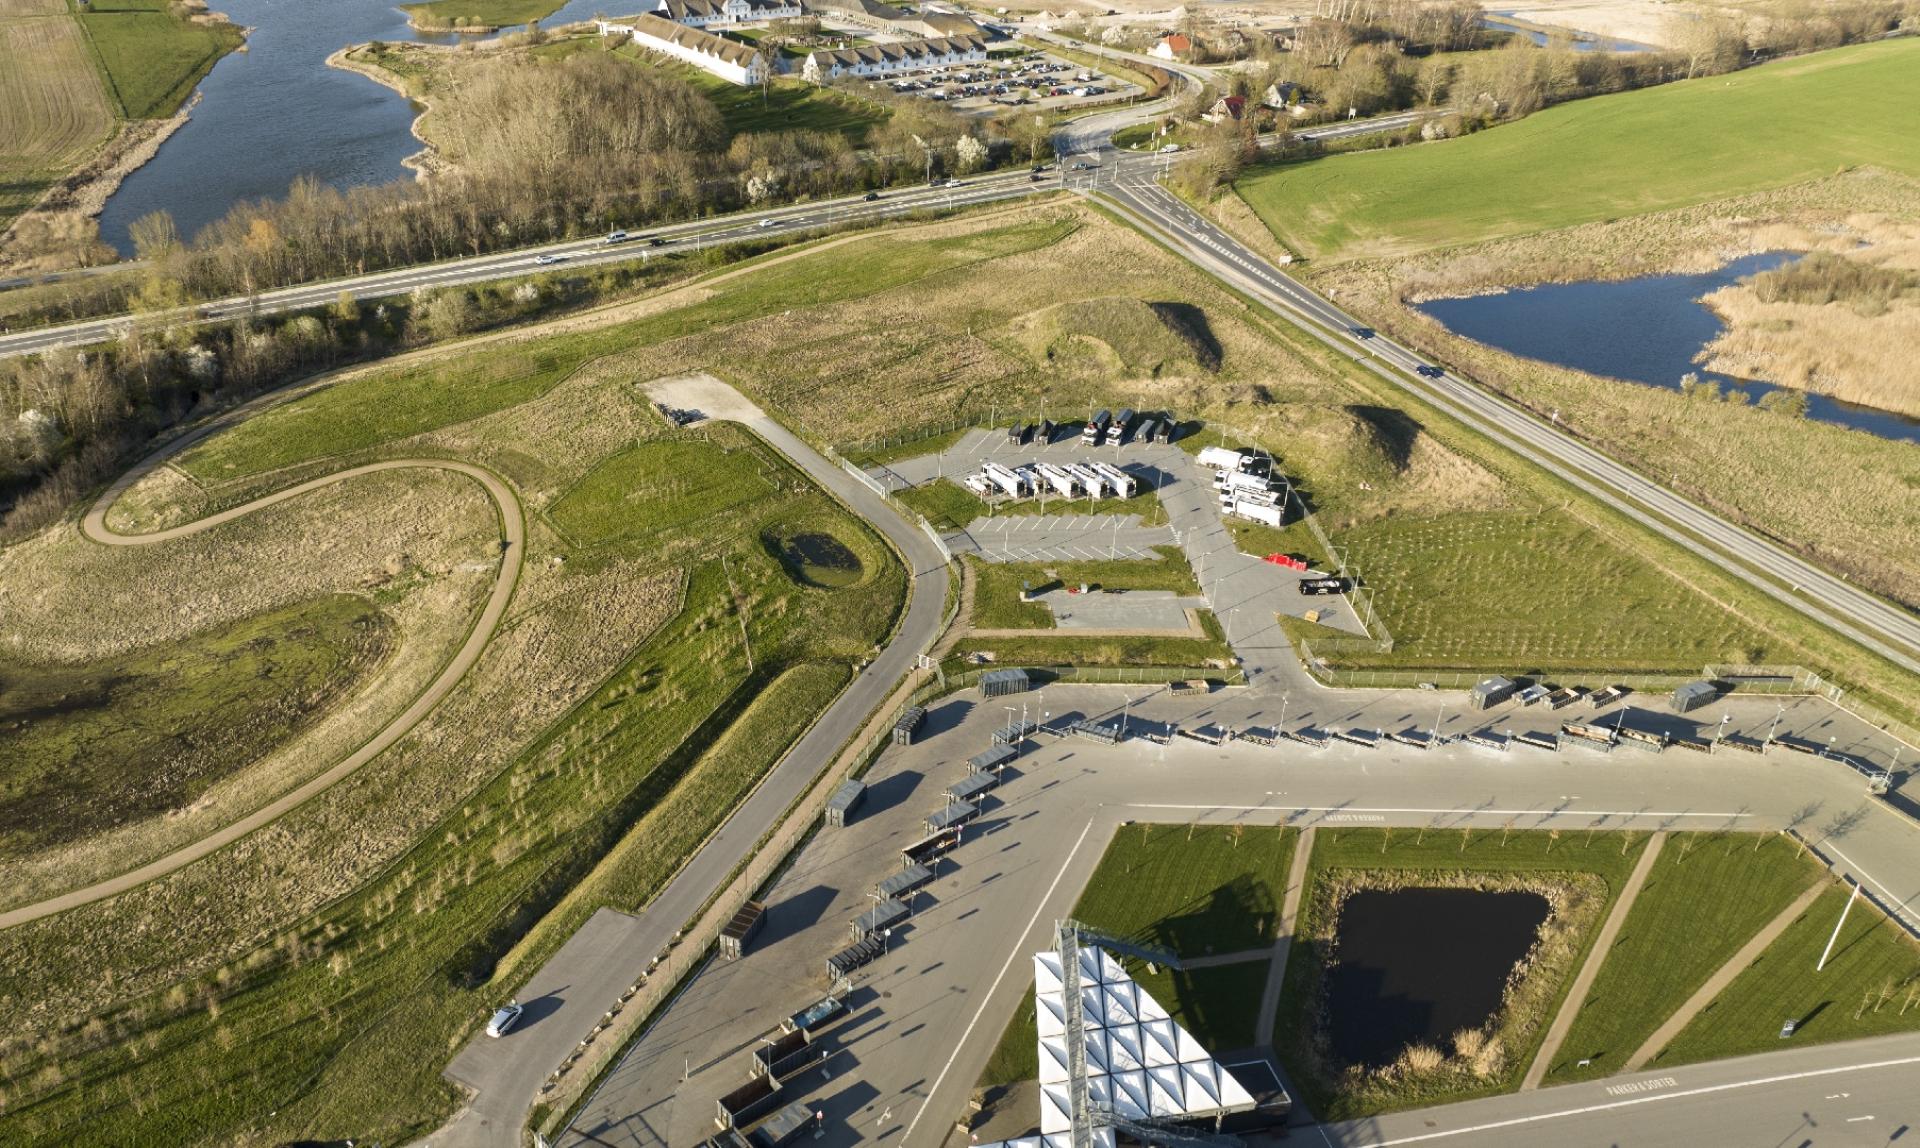 Det er her i energi-, klima-, og miljøparken Solrødgård, at vandværket skal bygges på arealet i hjørnet ved Roskildevej og Lyngevej (th.). I forgrunden ses genbrugspladsen, der stod færdig i maj 2016. Foto: Ernst Tobisch